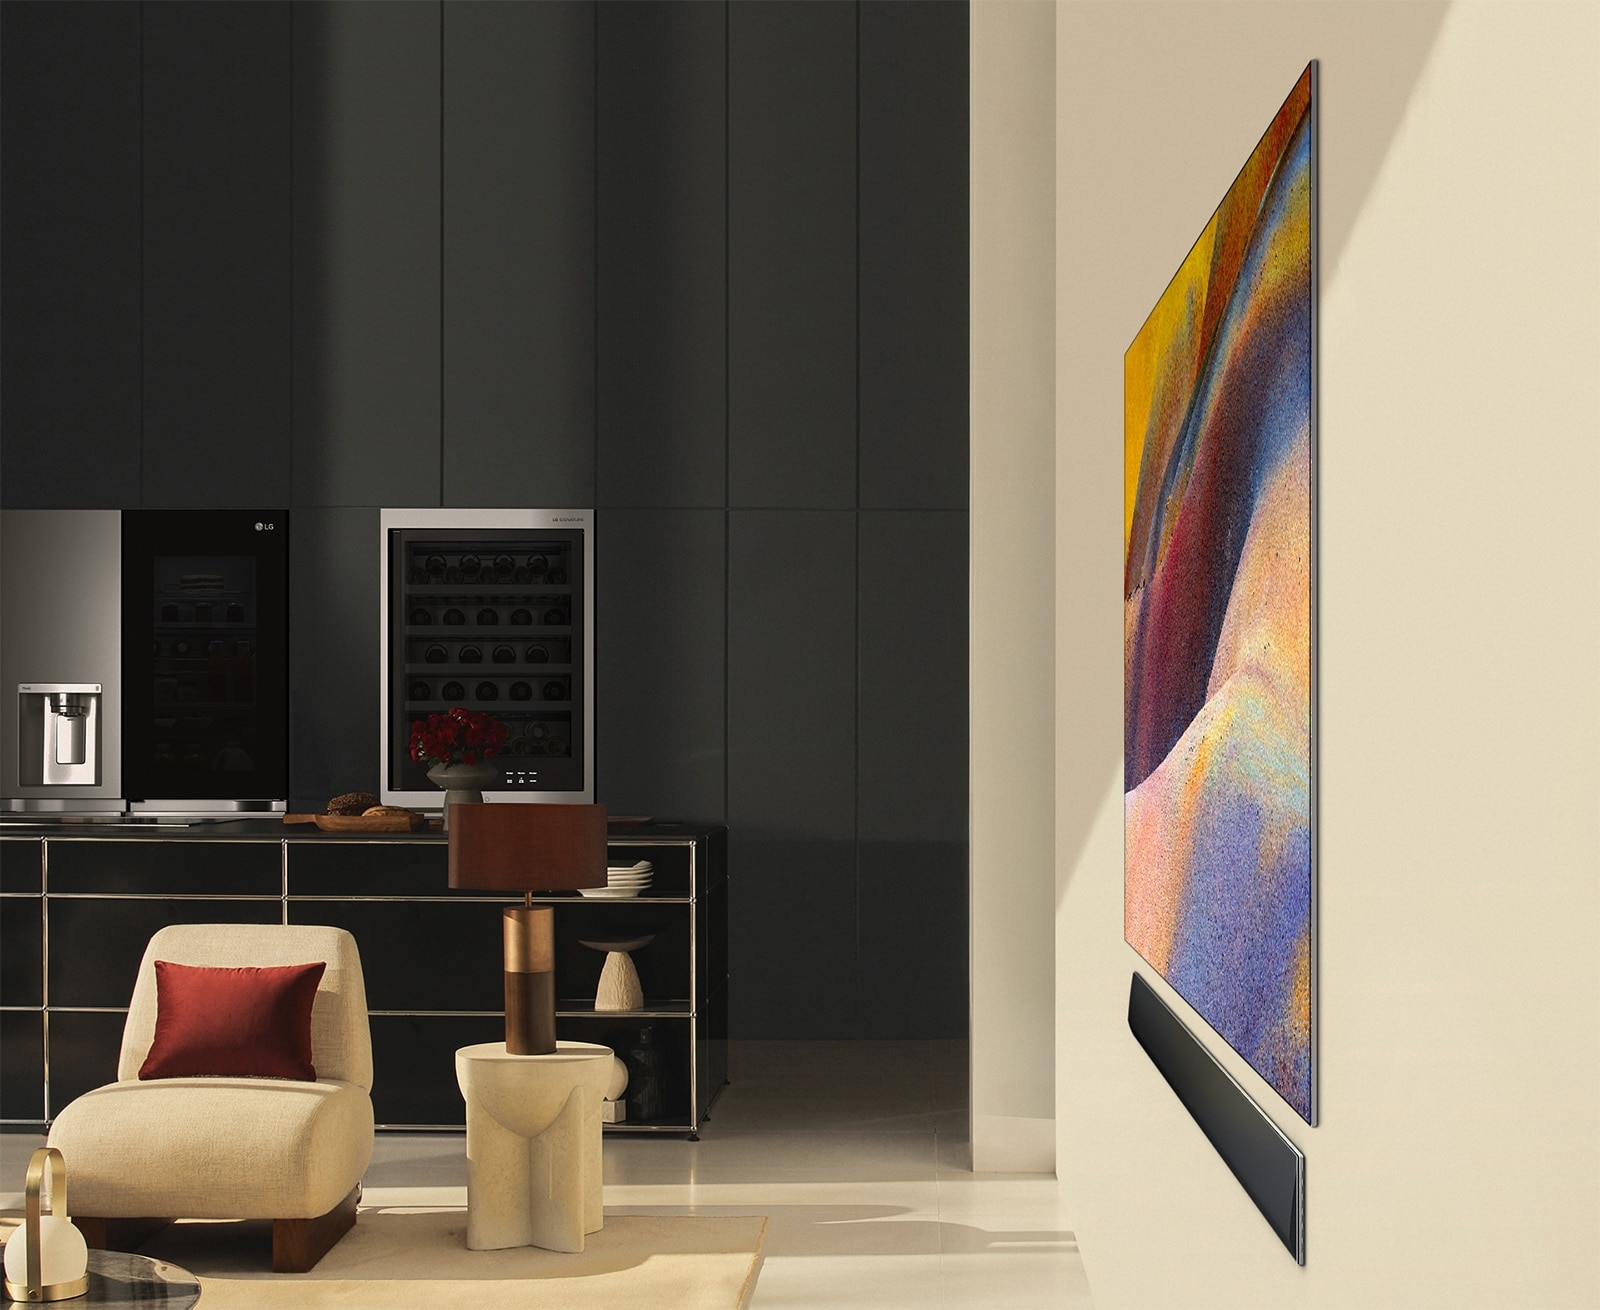 Телевизор LG OLED TV, OLED G4, на экране которого демонстрируется элегантная абстрактная картина, и звуковая панель LG Soundbar, установленные плоско на стене в современном жилом пространстве.